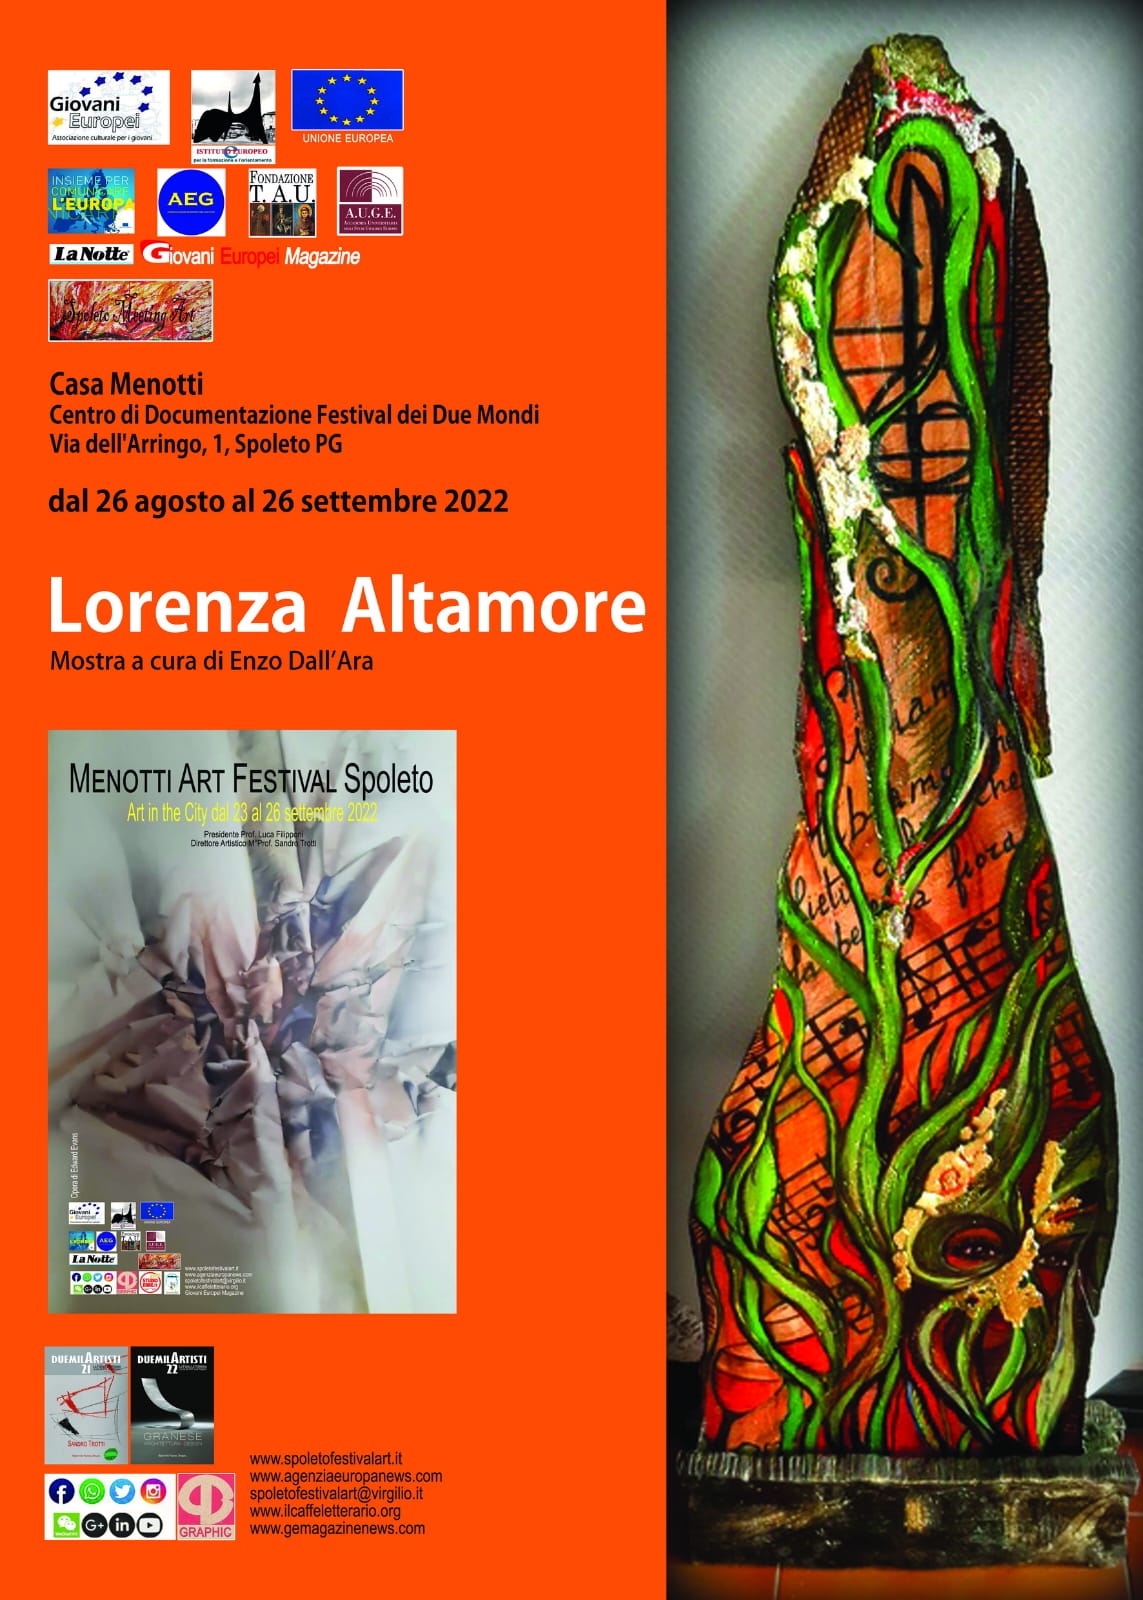 Foto 2 - Menotti Art Festival Spoleto si presenta a Casa Menotti